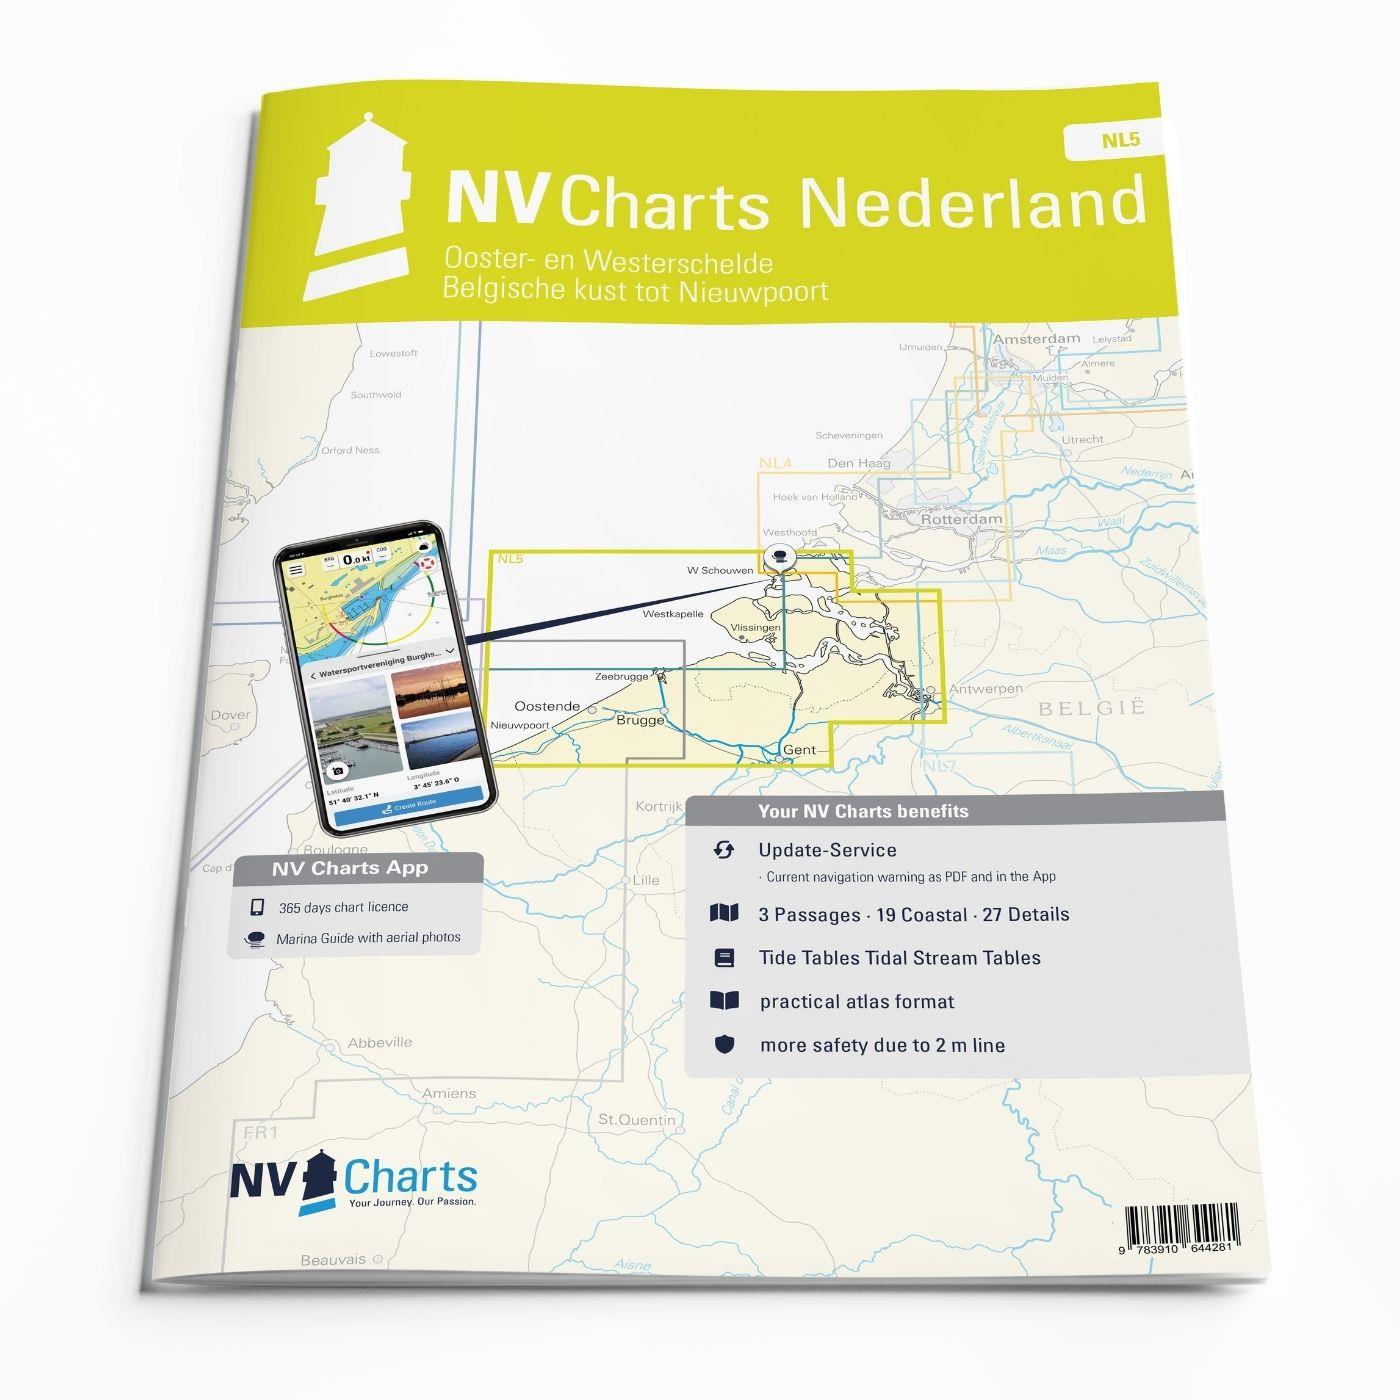 NV Charts Nederland NL5 - Ooster- en Westerschelde